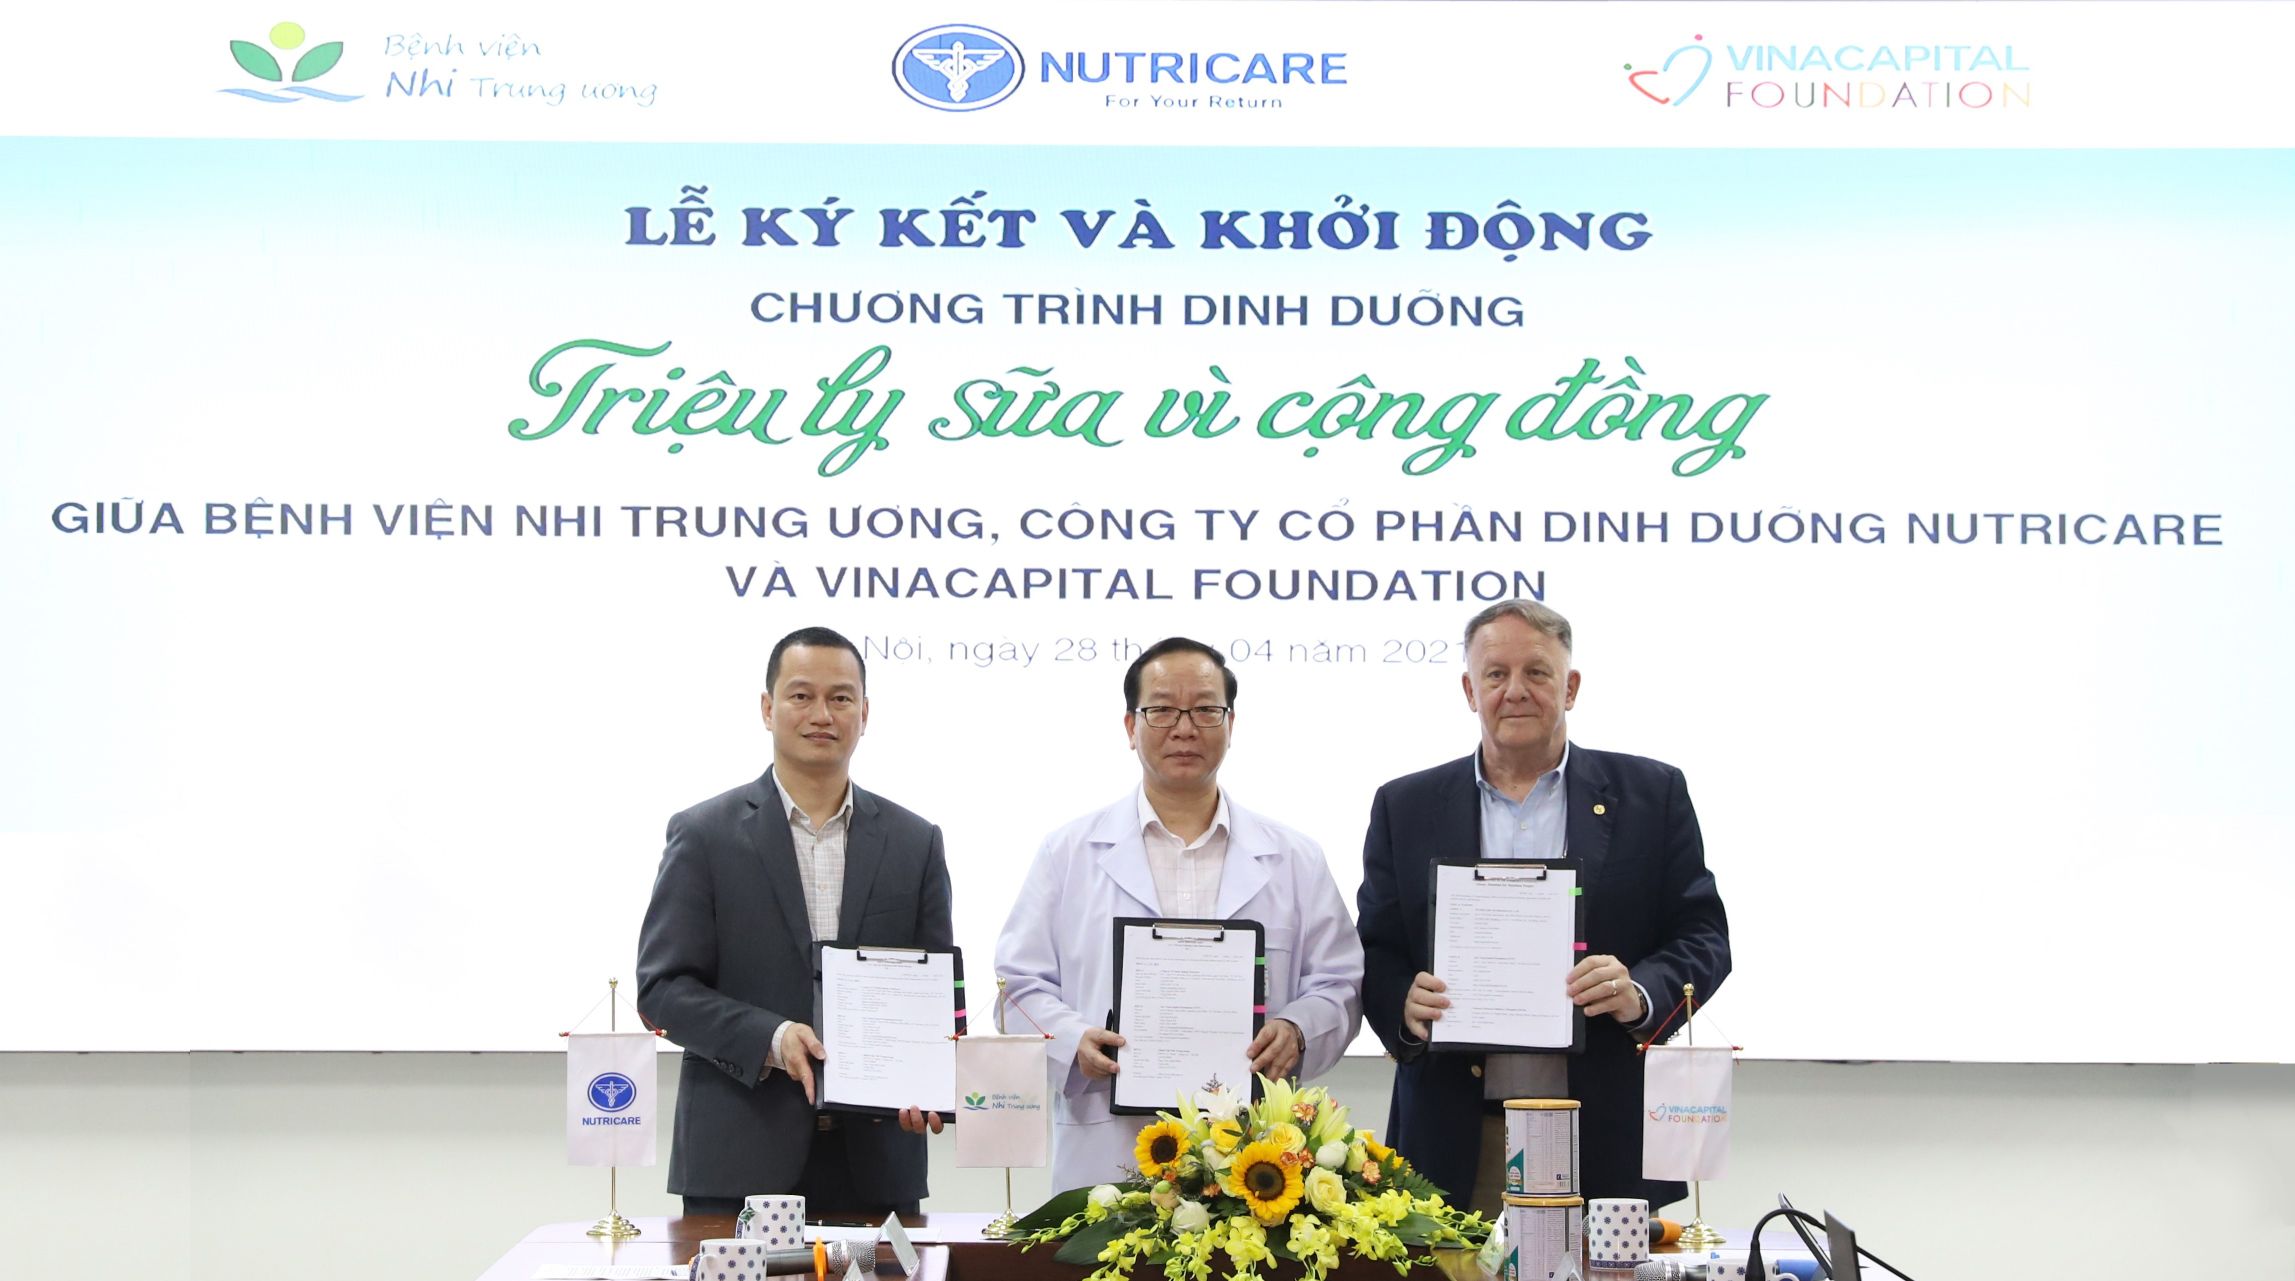 Ký kết Thỏa thuận hợp tác giữa Bệnh viện Nhi Trung ương CTCP Dinh dưỡng Nutricare và VinaCapital Foundation VinaCapital Foundation phát động chương trình dinh dưỡng cho bệnh nhi ung thư